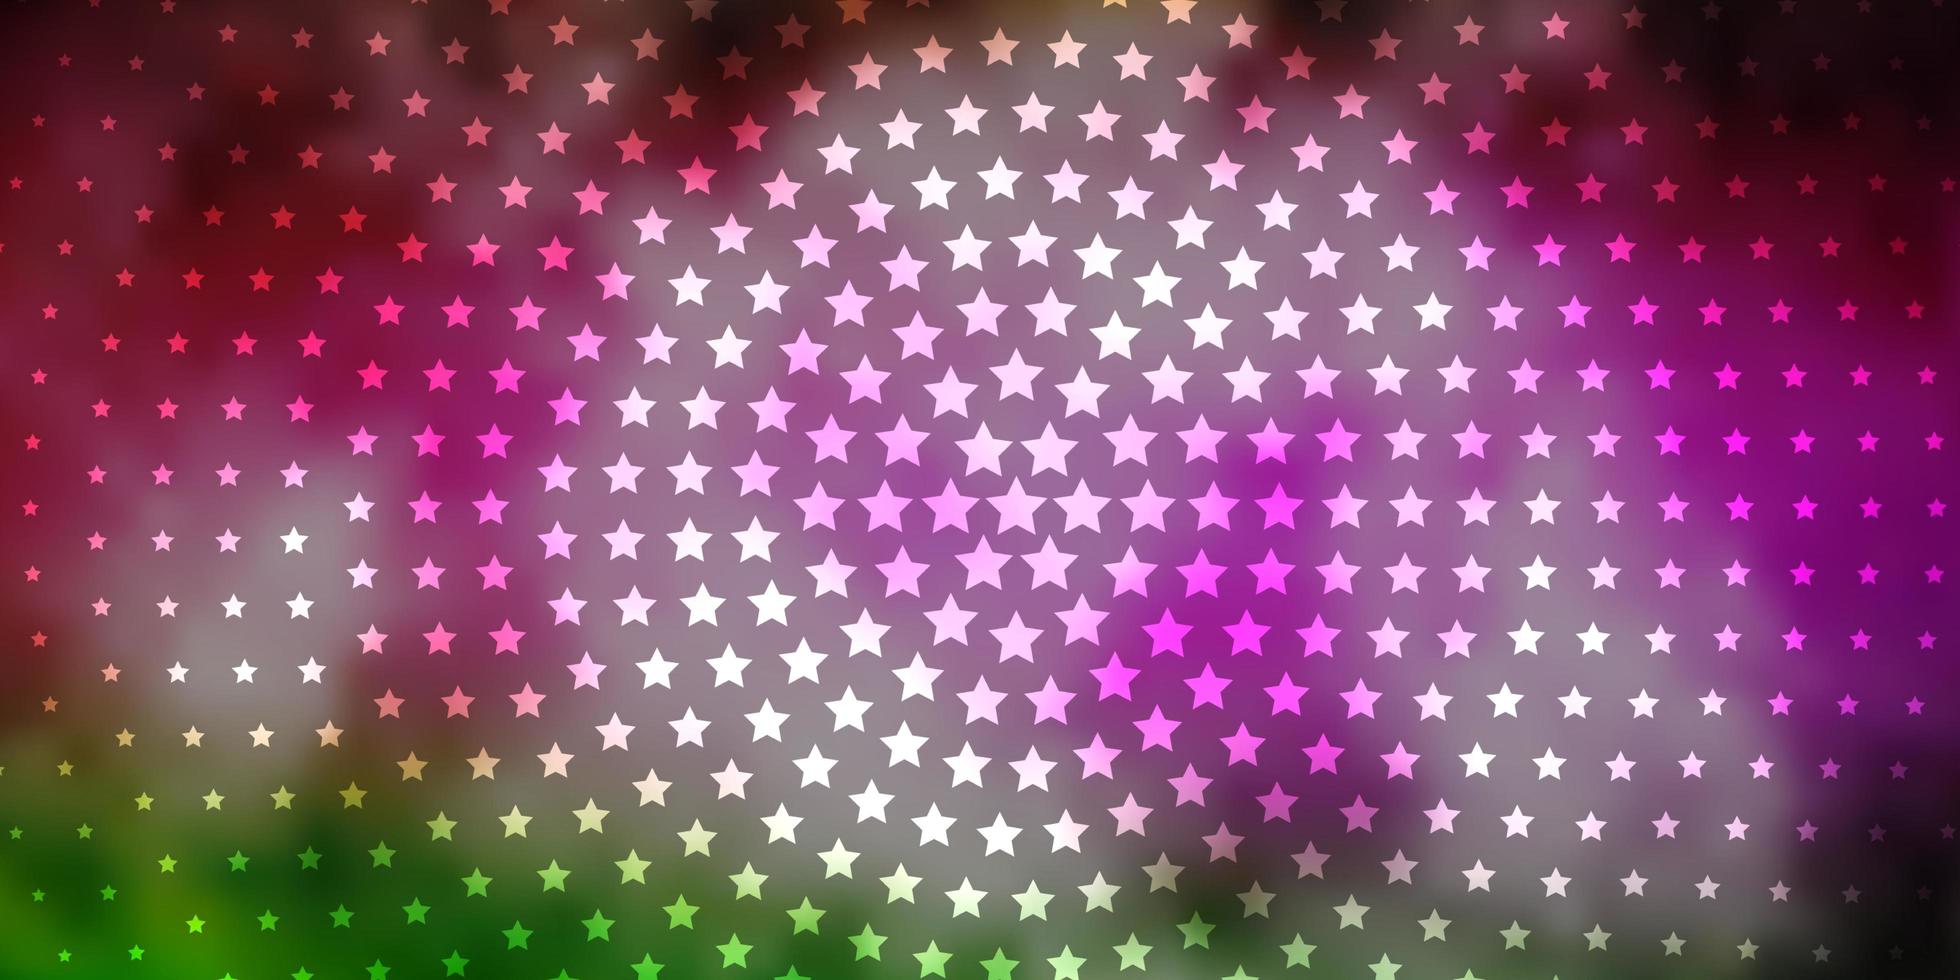 padrão de luz rosa, verde vetor com estrelas abstratas. ilustração abstrata geométrica moderna com estrelas. design para a promoção de seus negócios.